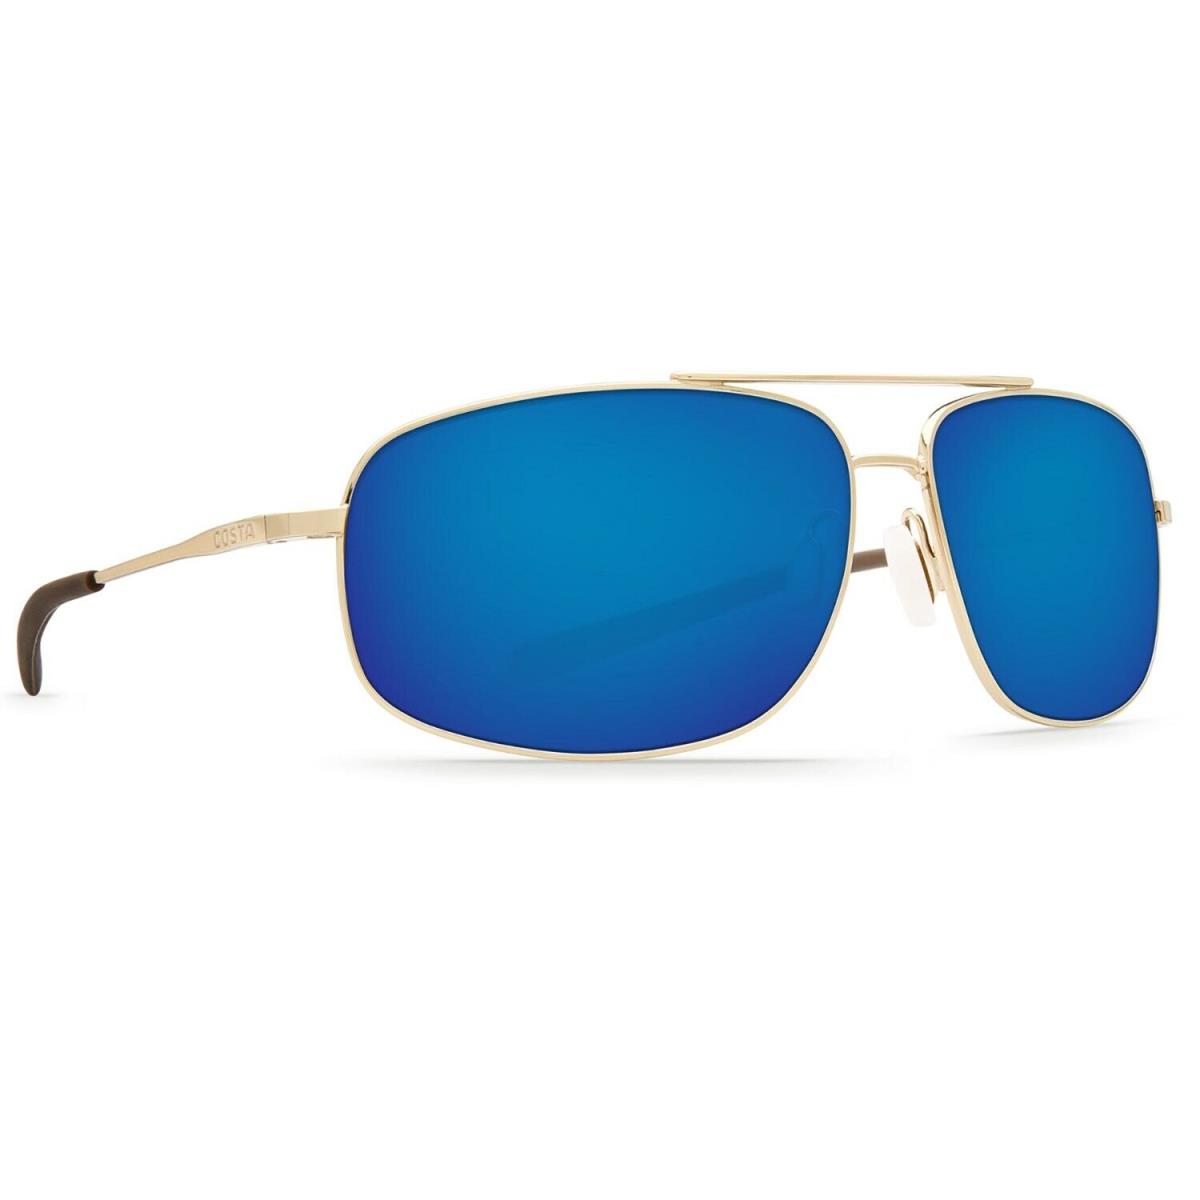 Costa Del Mar Shipmaster Sunglasses - Polarized ShinyGold/BlueMirror